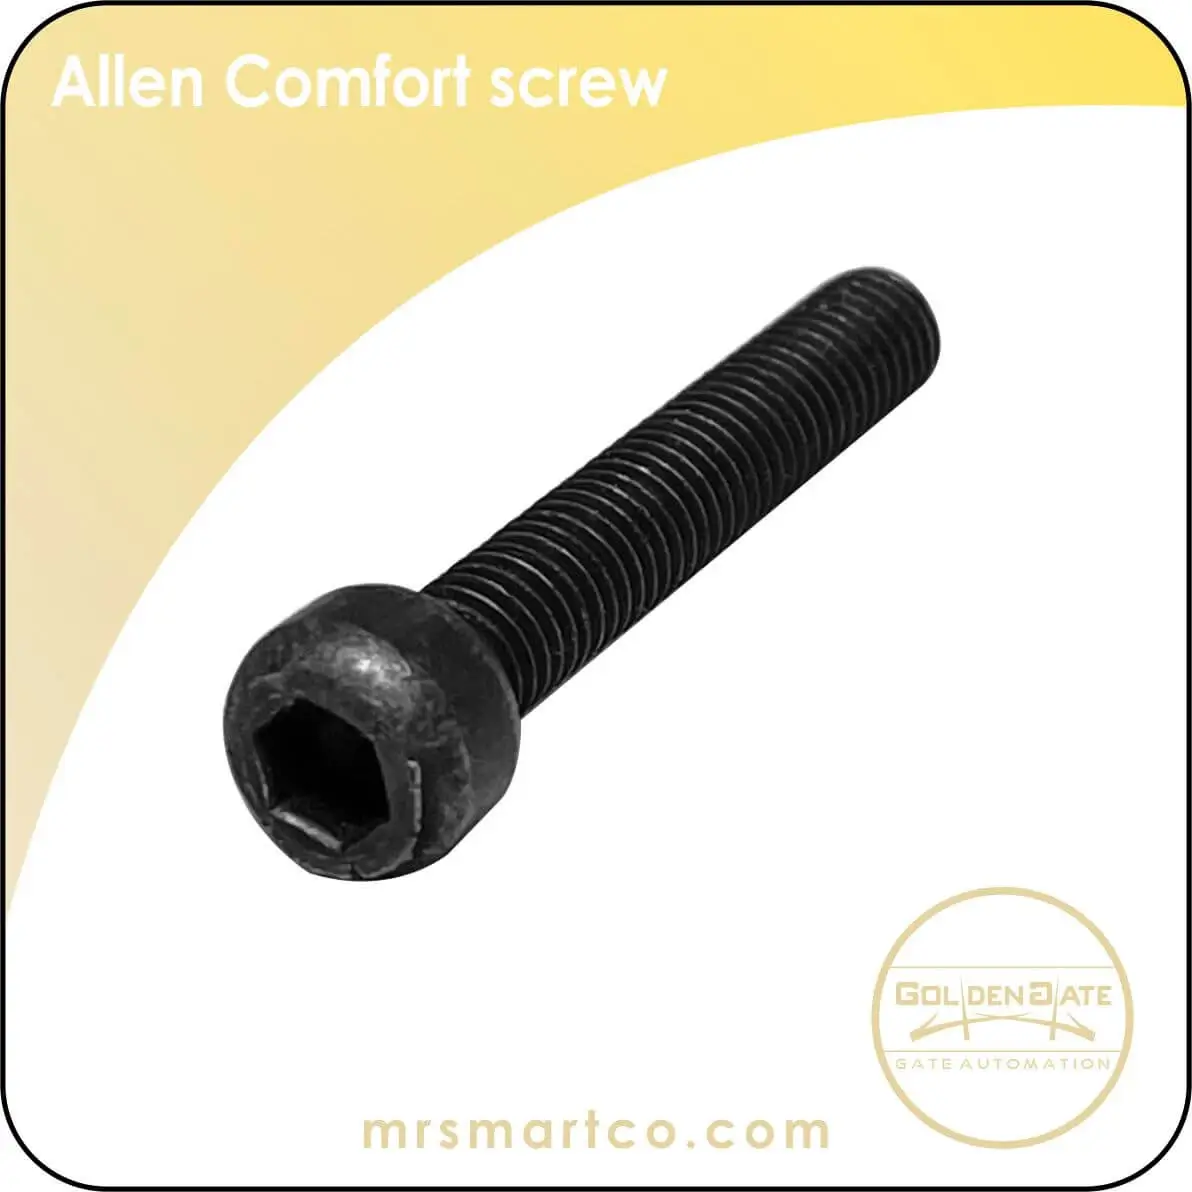 Allen Comfort screw